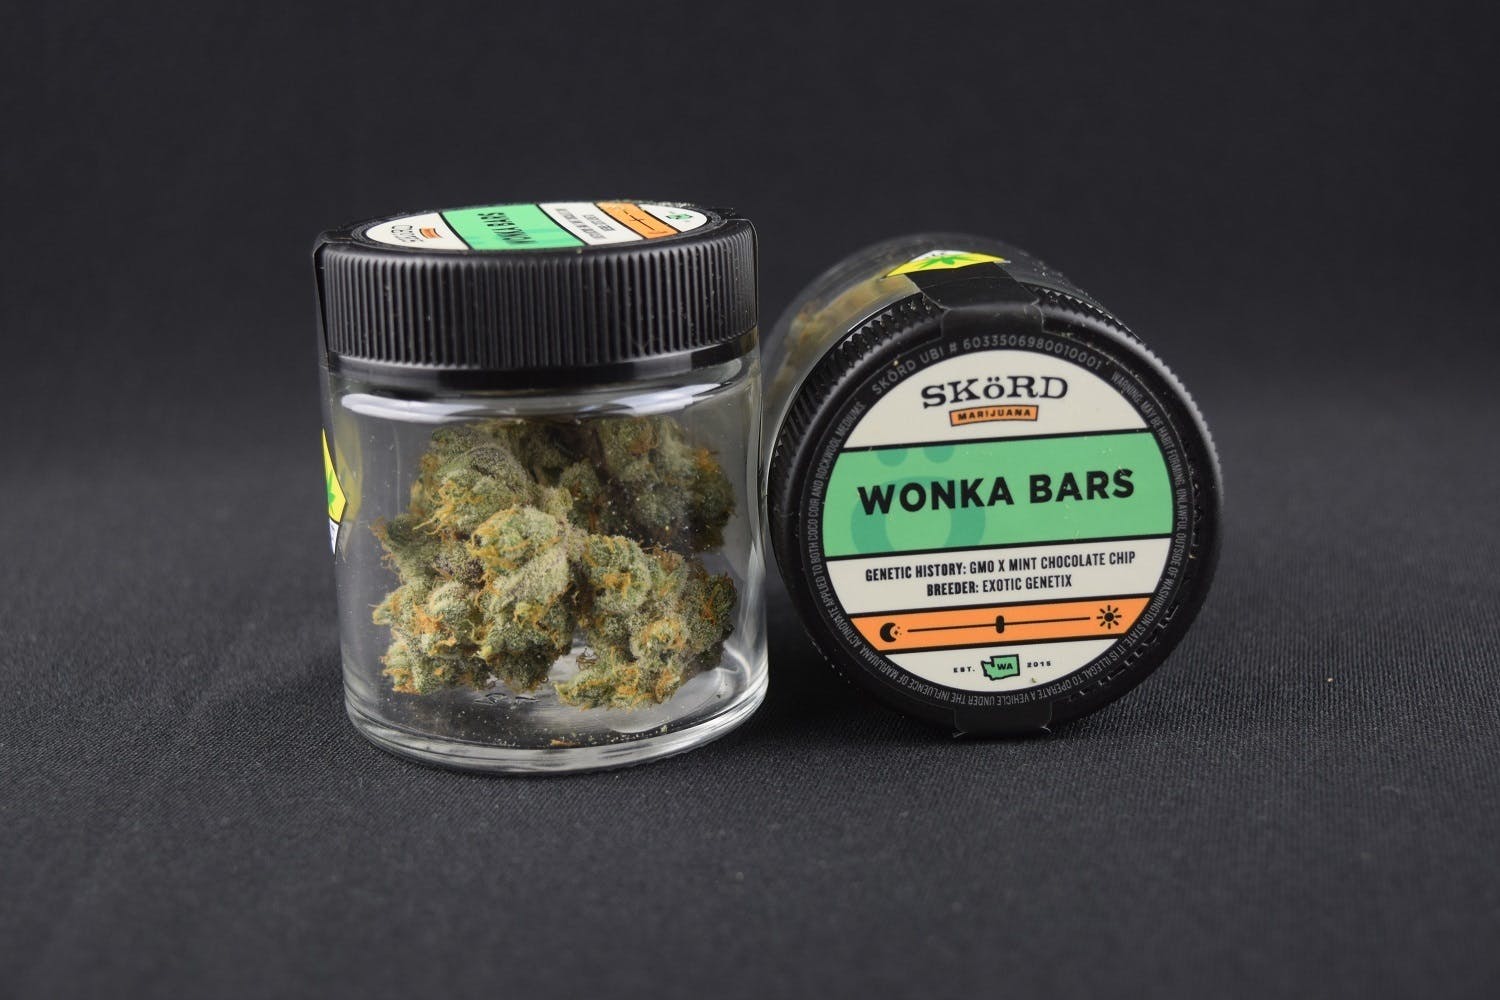 marijuana-dispensaries-freedom-market-longview-recreational-in-longview-wonka-bars-skaprd